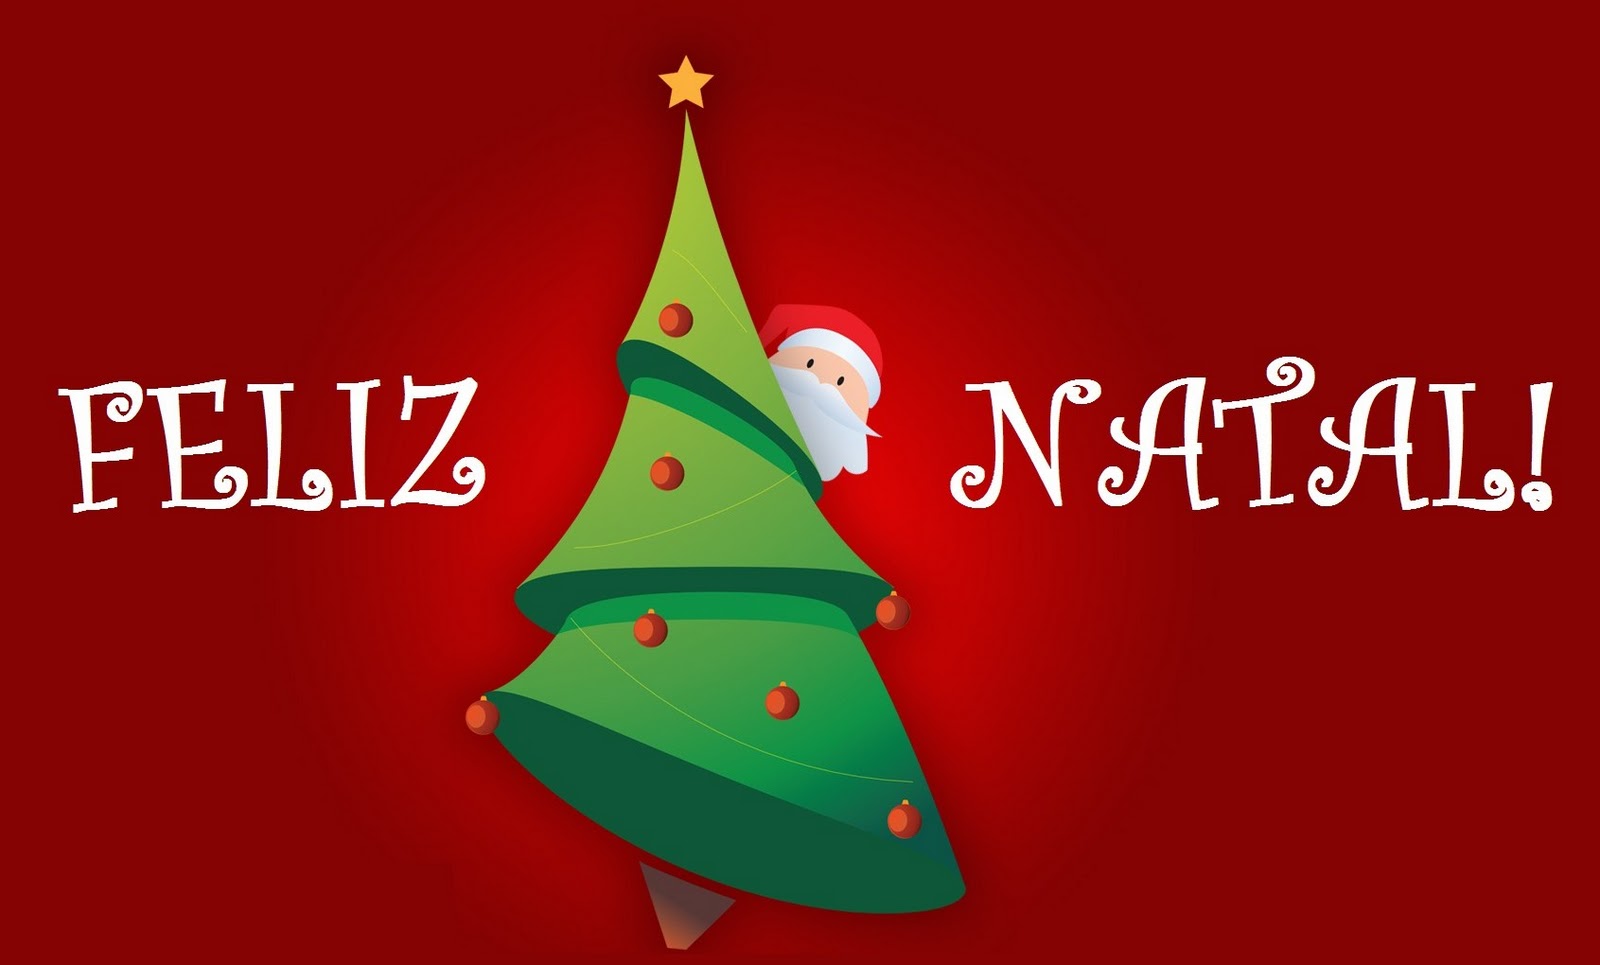 papel pintado natal,árbol de navidad,decoración navideña,navidad,decoración navideña,nochebuena